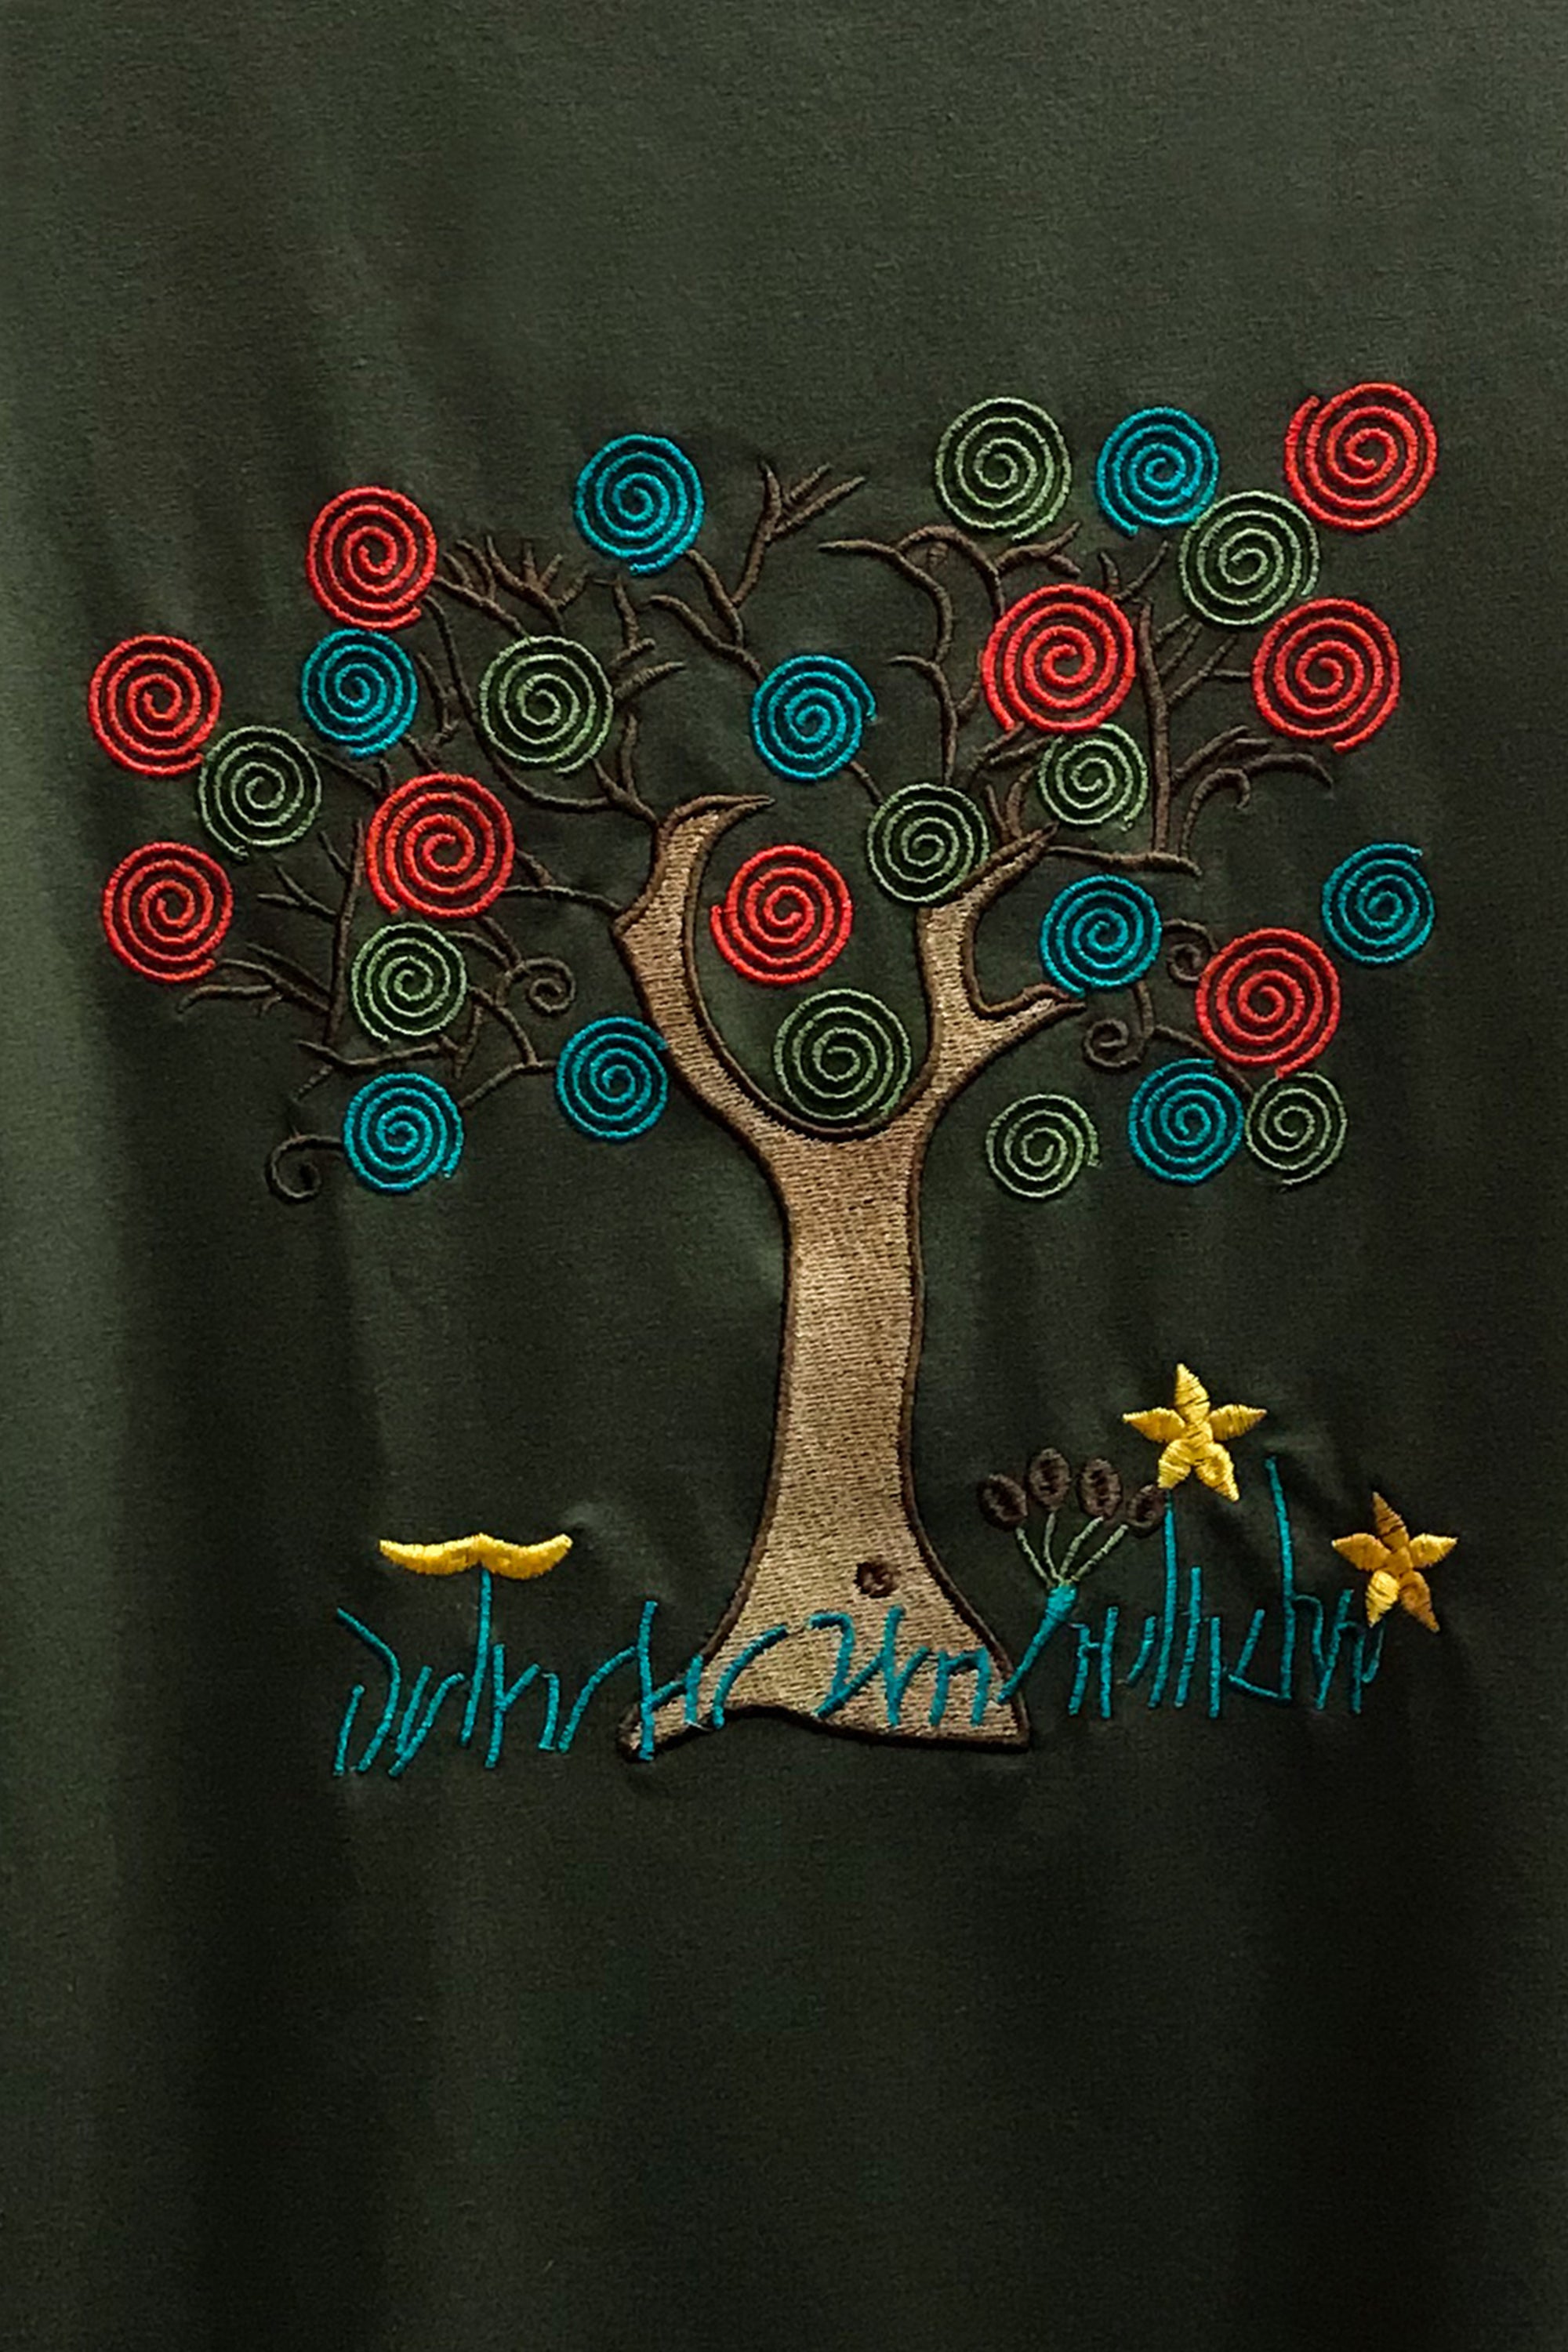 Trees of Hope Basic T-Shirt